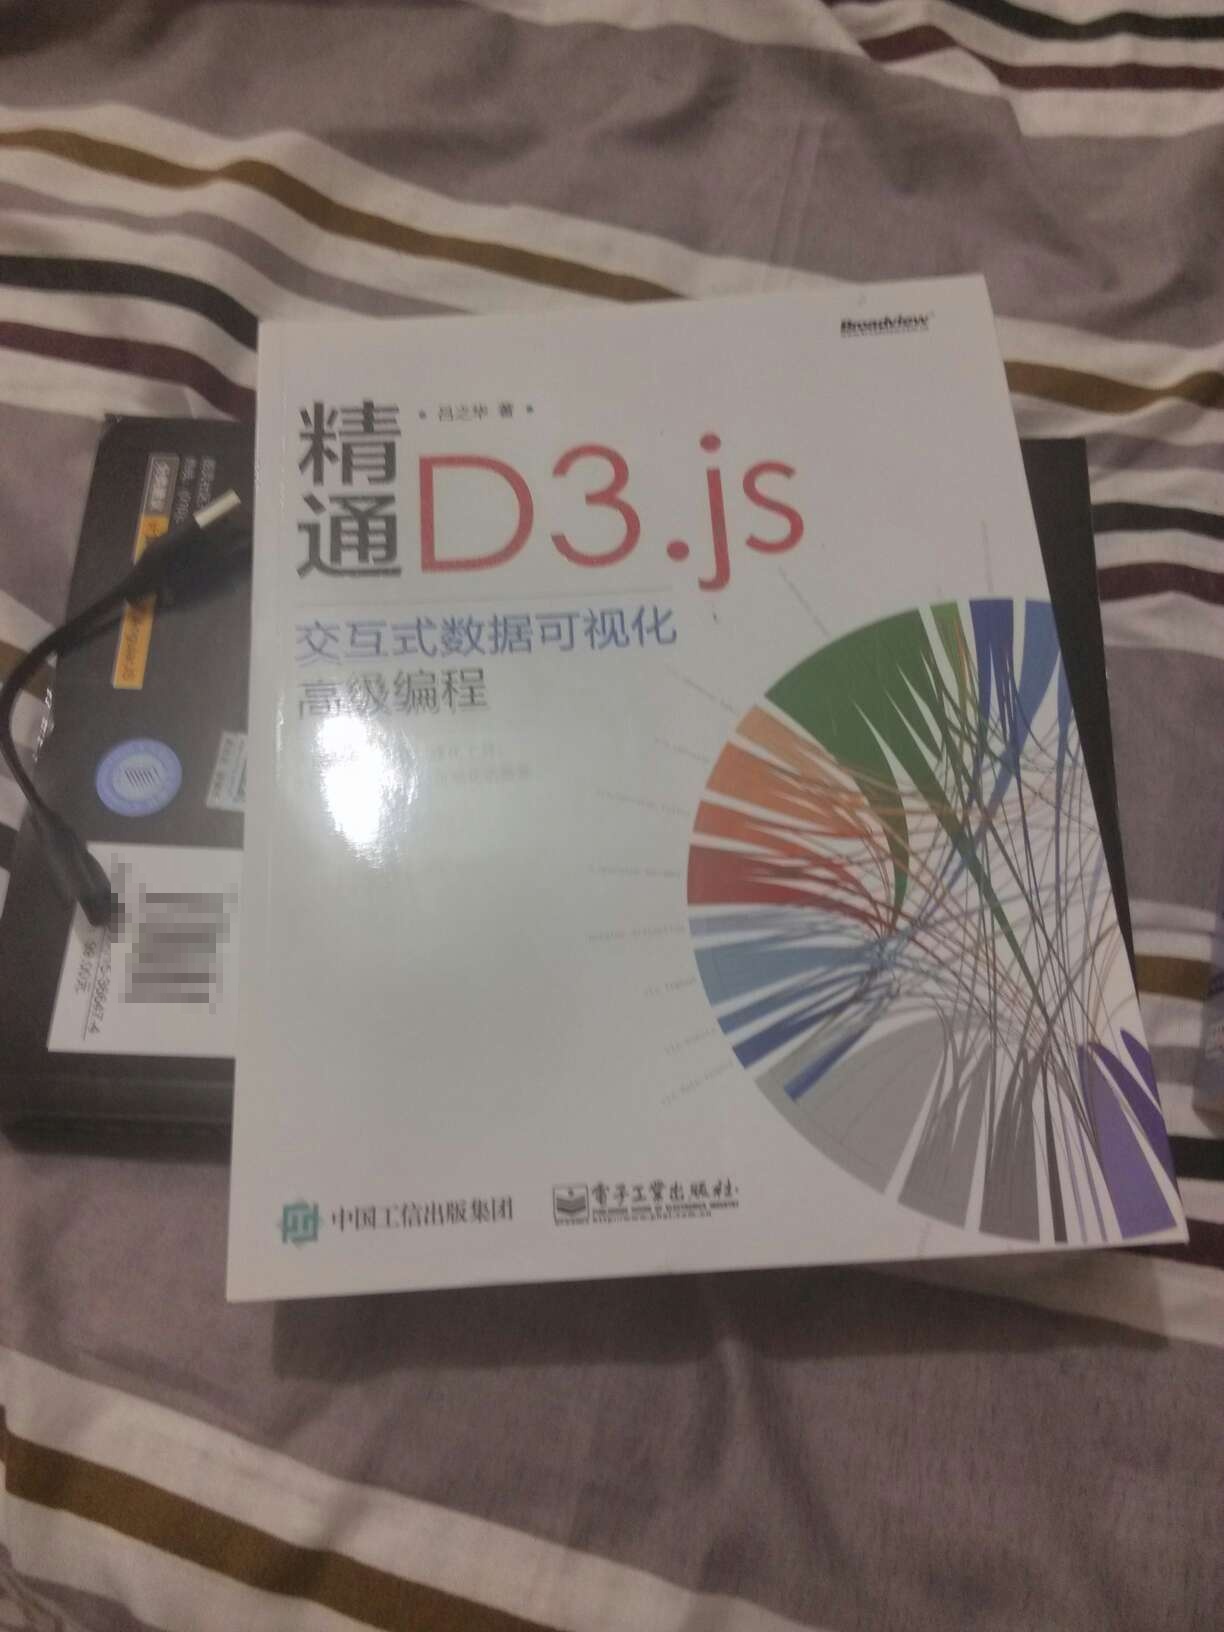 喜欢D3,学习中。